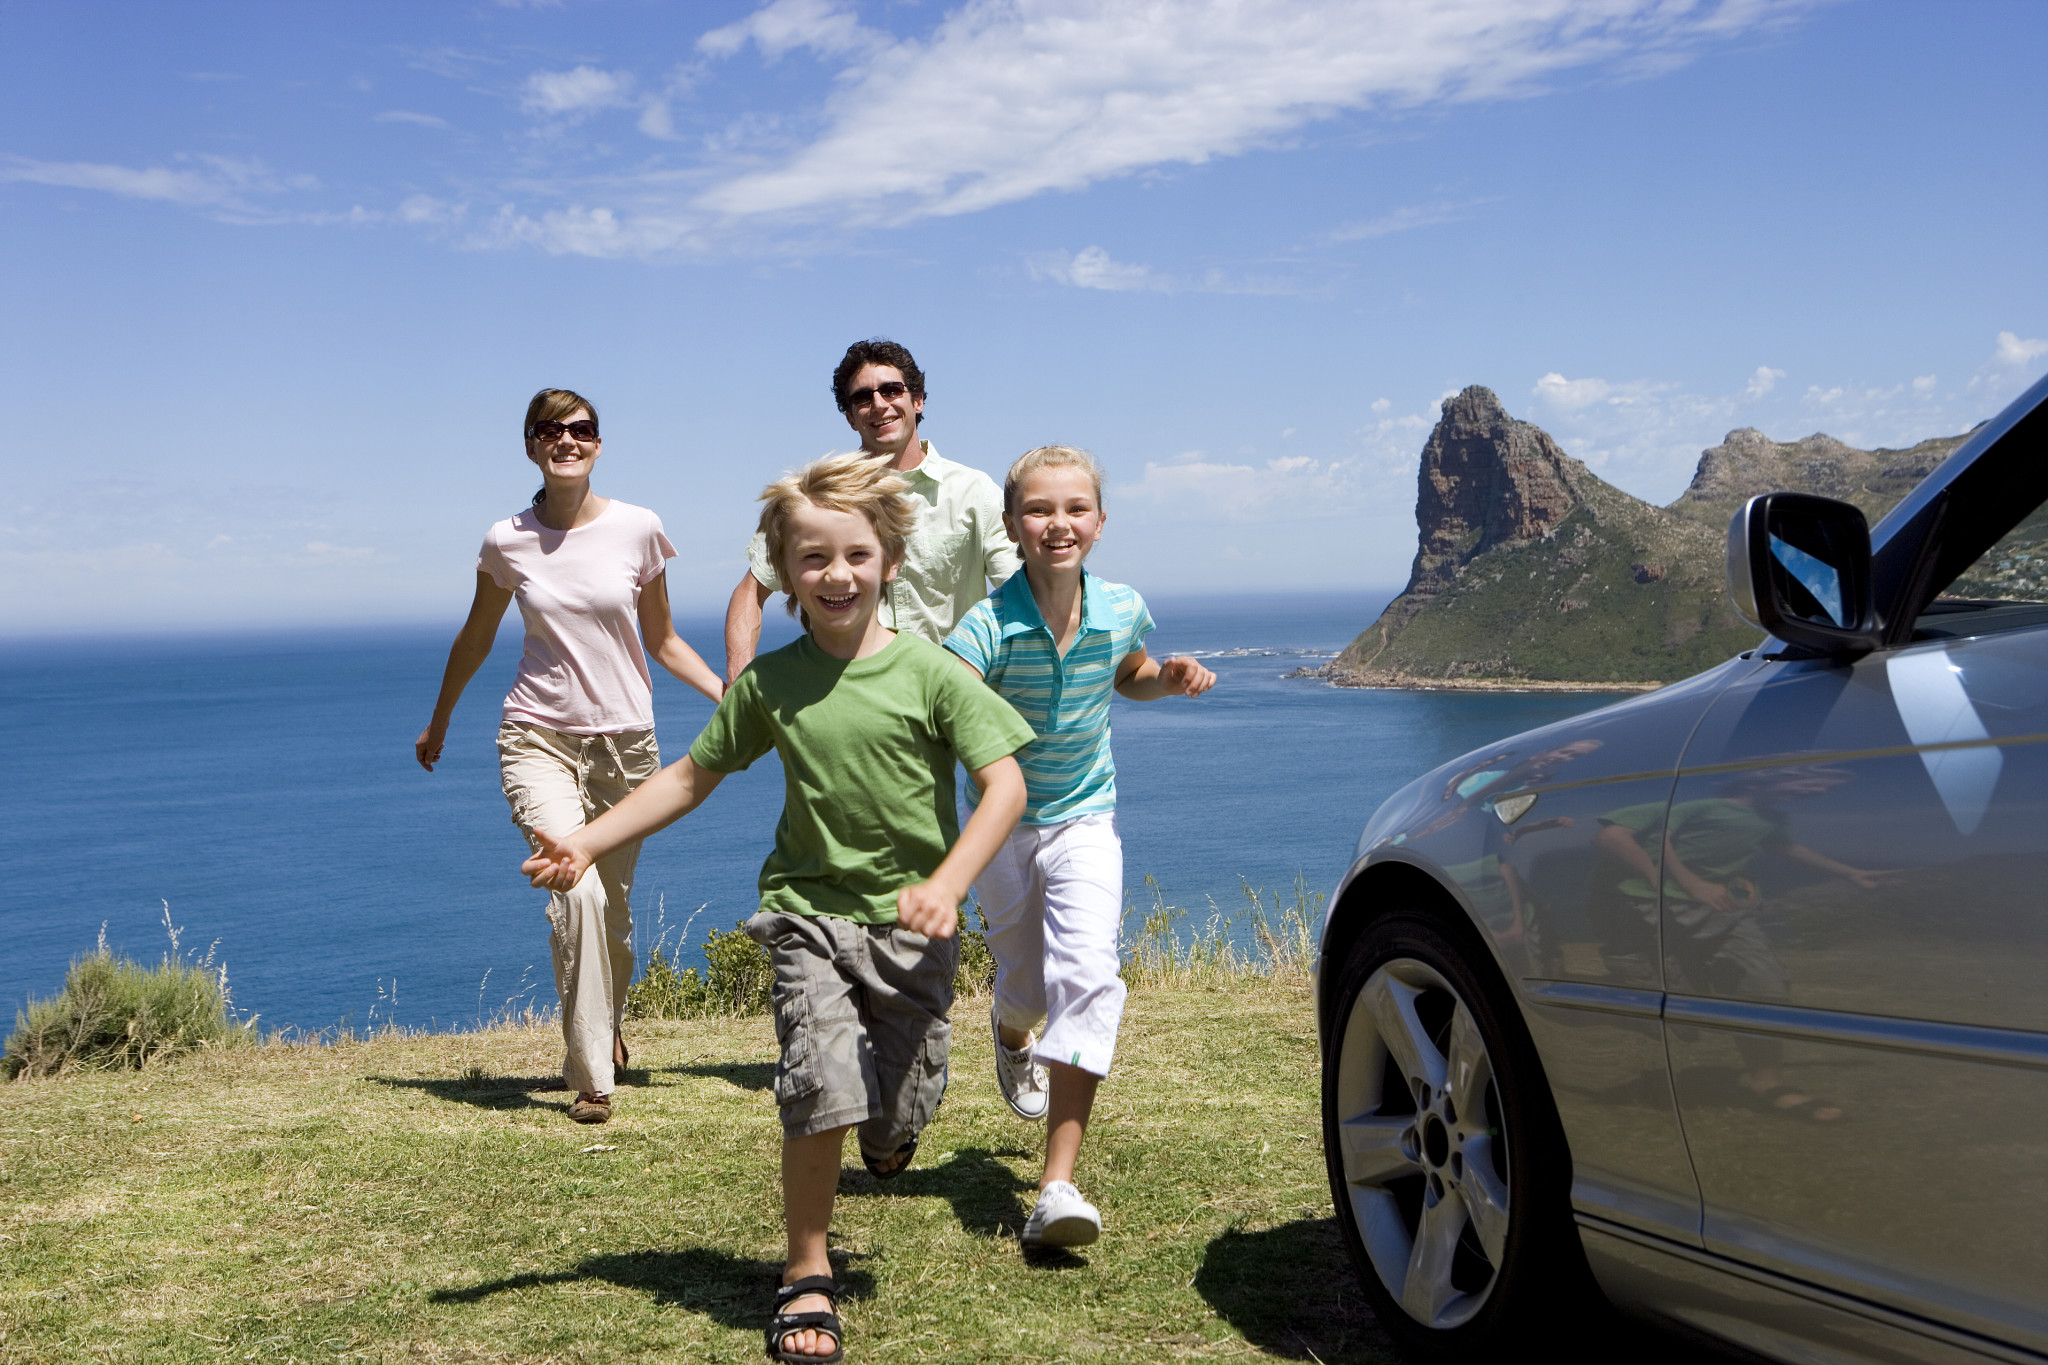 Поездка. Машина для путешествий семьей. Путешествие с семьей. Семейные путешествия с детьми. Семья в поездке.